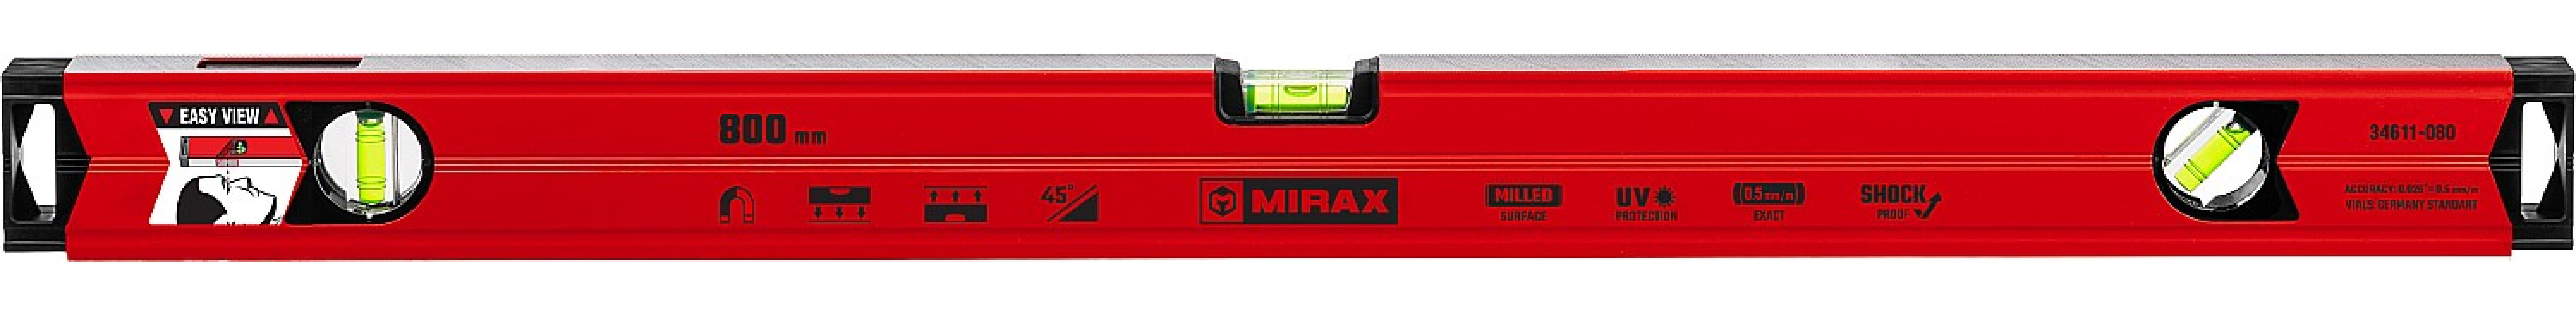    MIRAX 800  (34611-080)